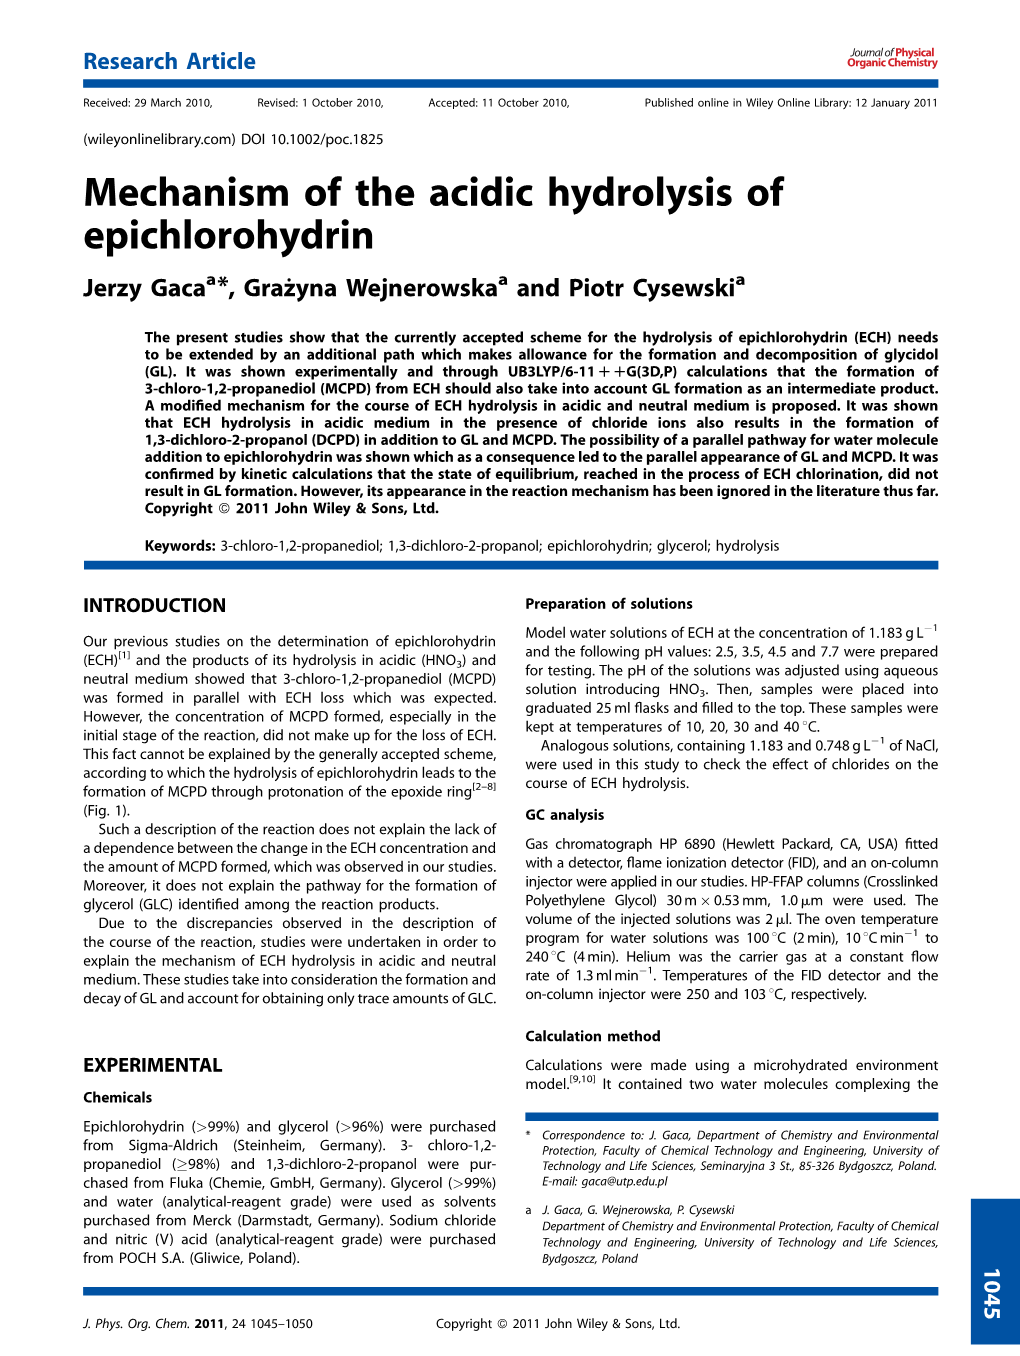 Mechanism of the Acidic Hydrolysis of Epichlorohydrin Jerzy Gacaa*,Graz˙Yna Wejnerowskaa and Piotr Cysewskia